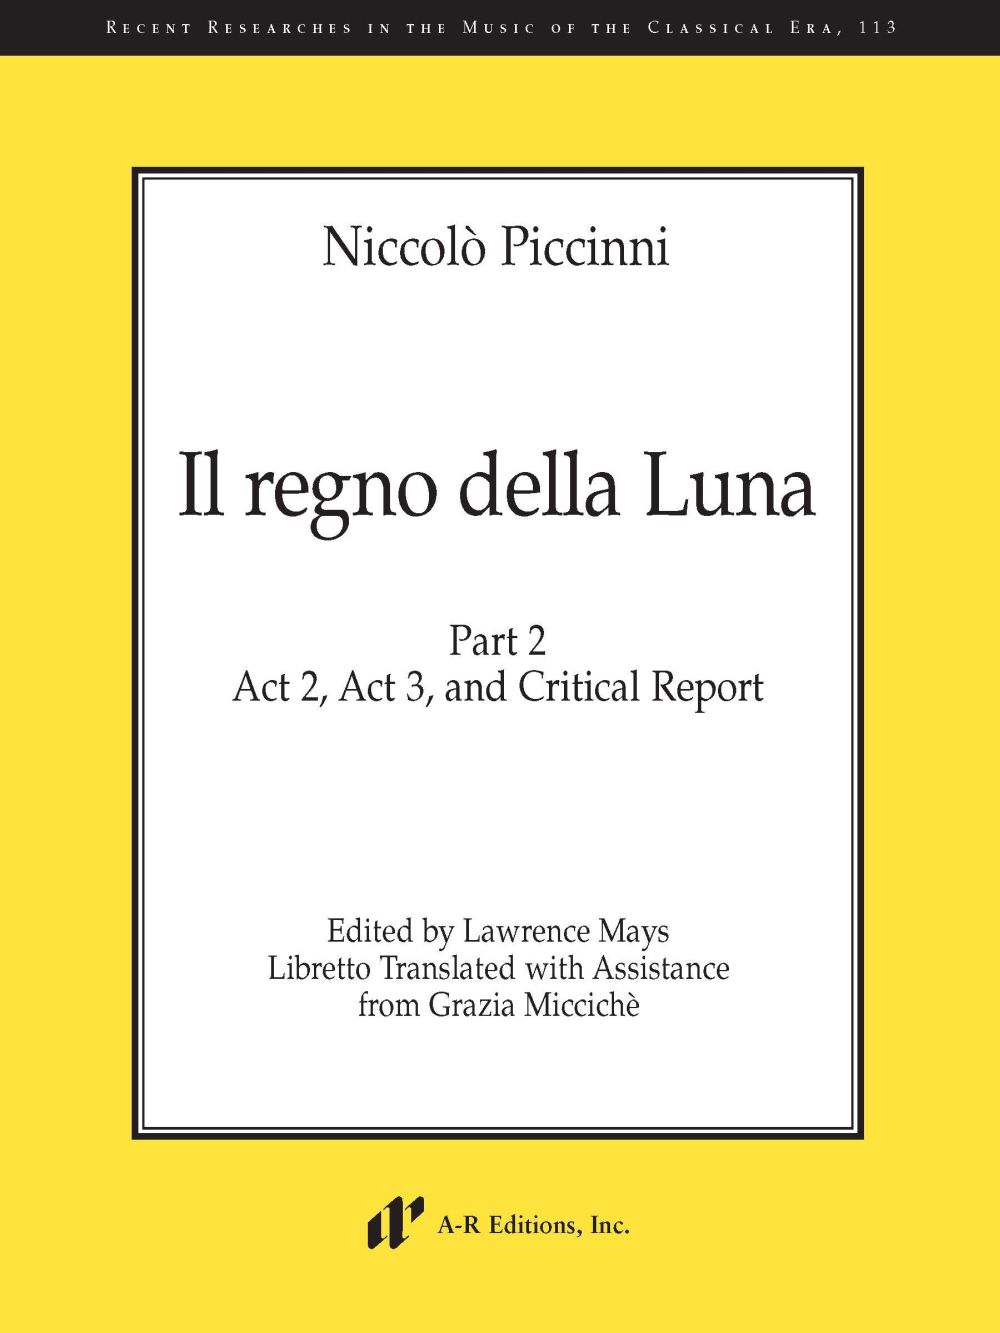 Niccolo Piccinni: Il Regno della Luna Part 2